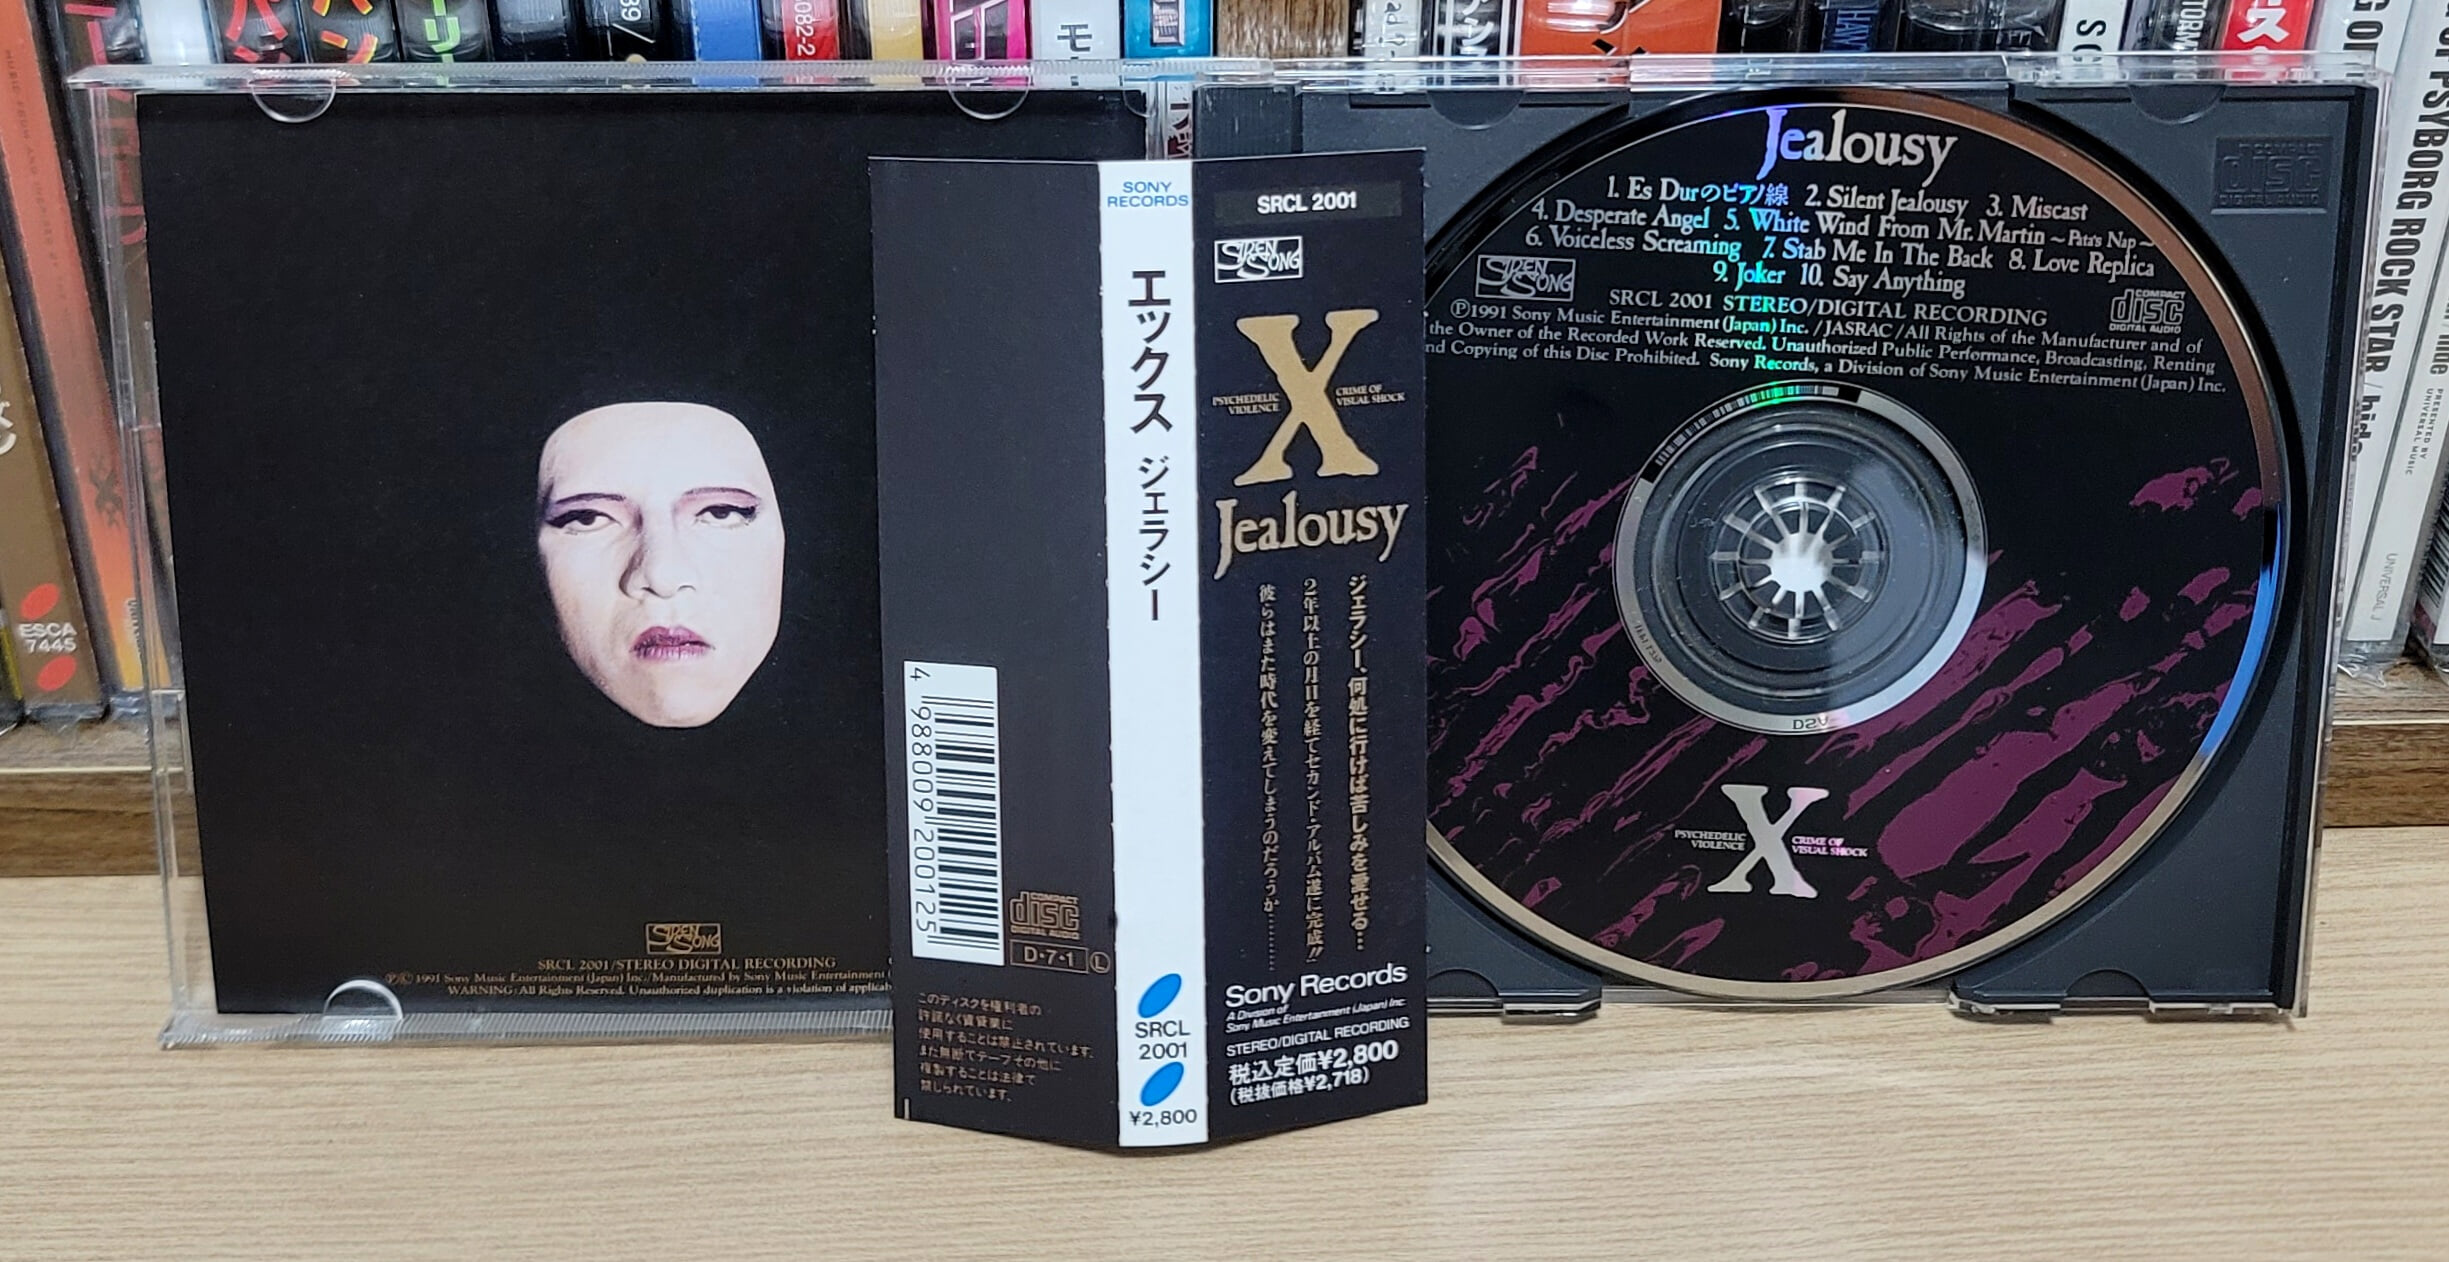 (일본반) X-JAPAN - Jealousy